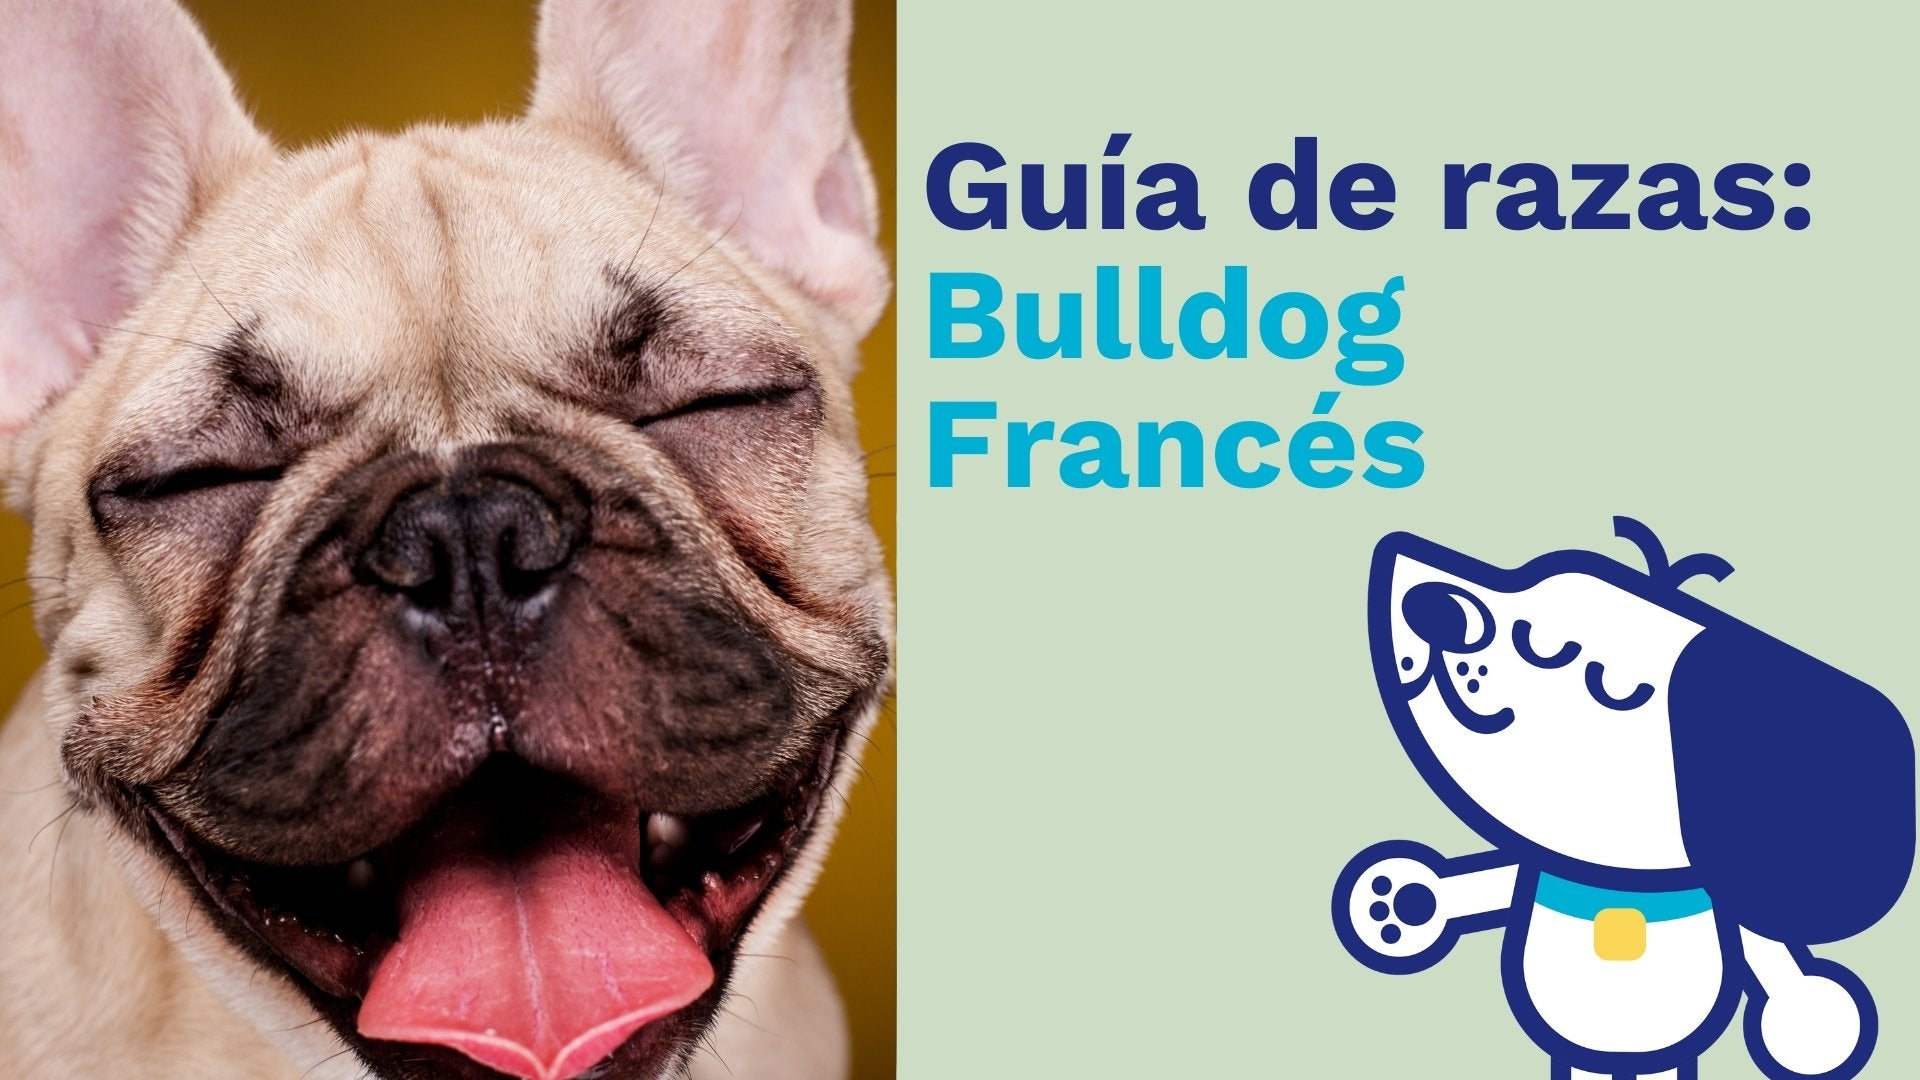 Bulldog Frances: Características y más 